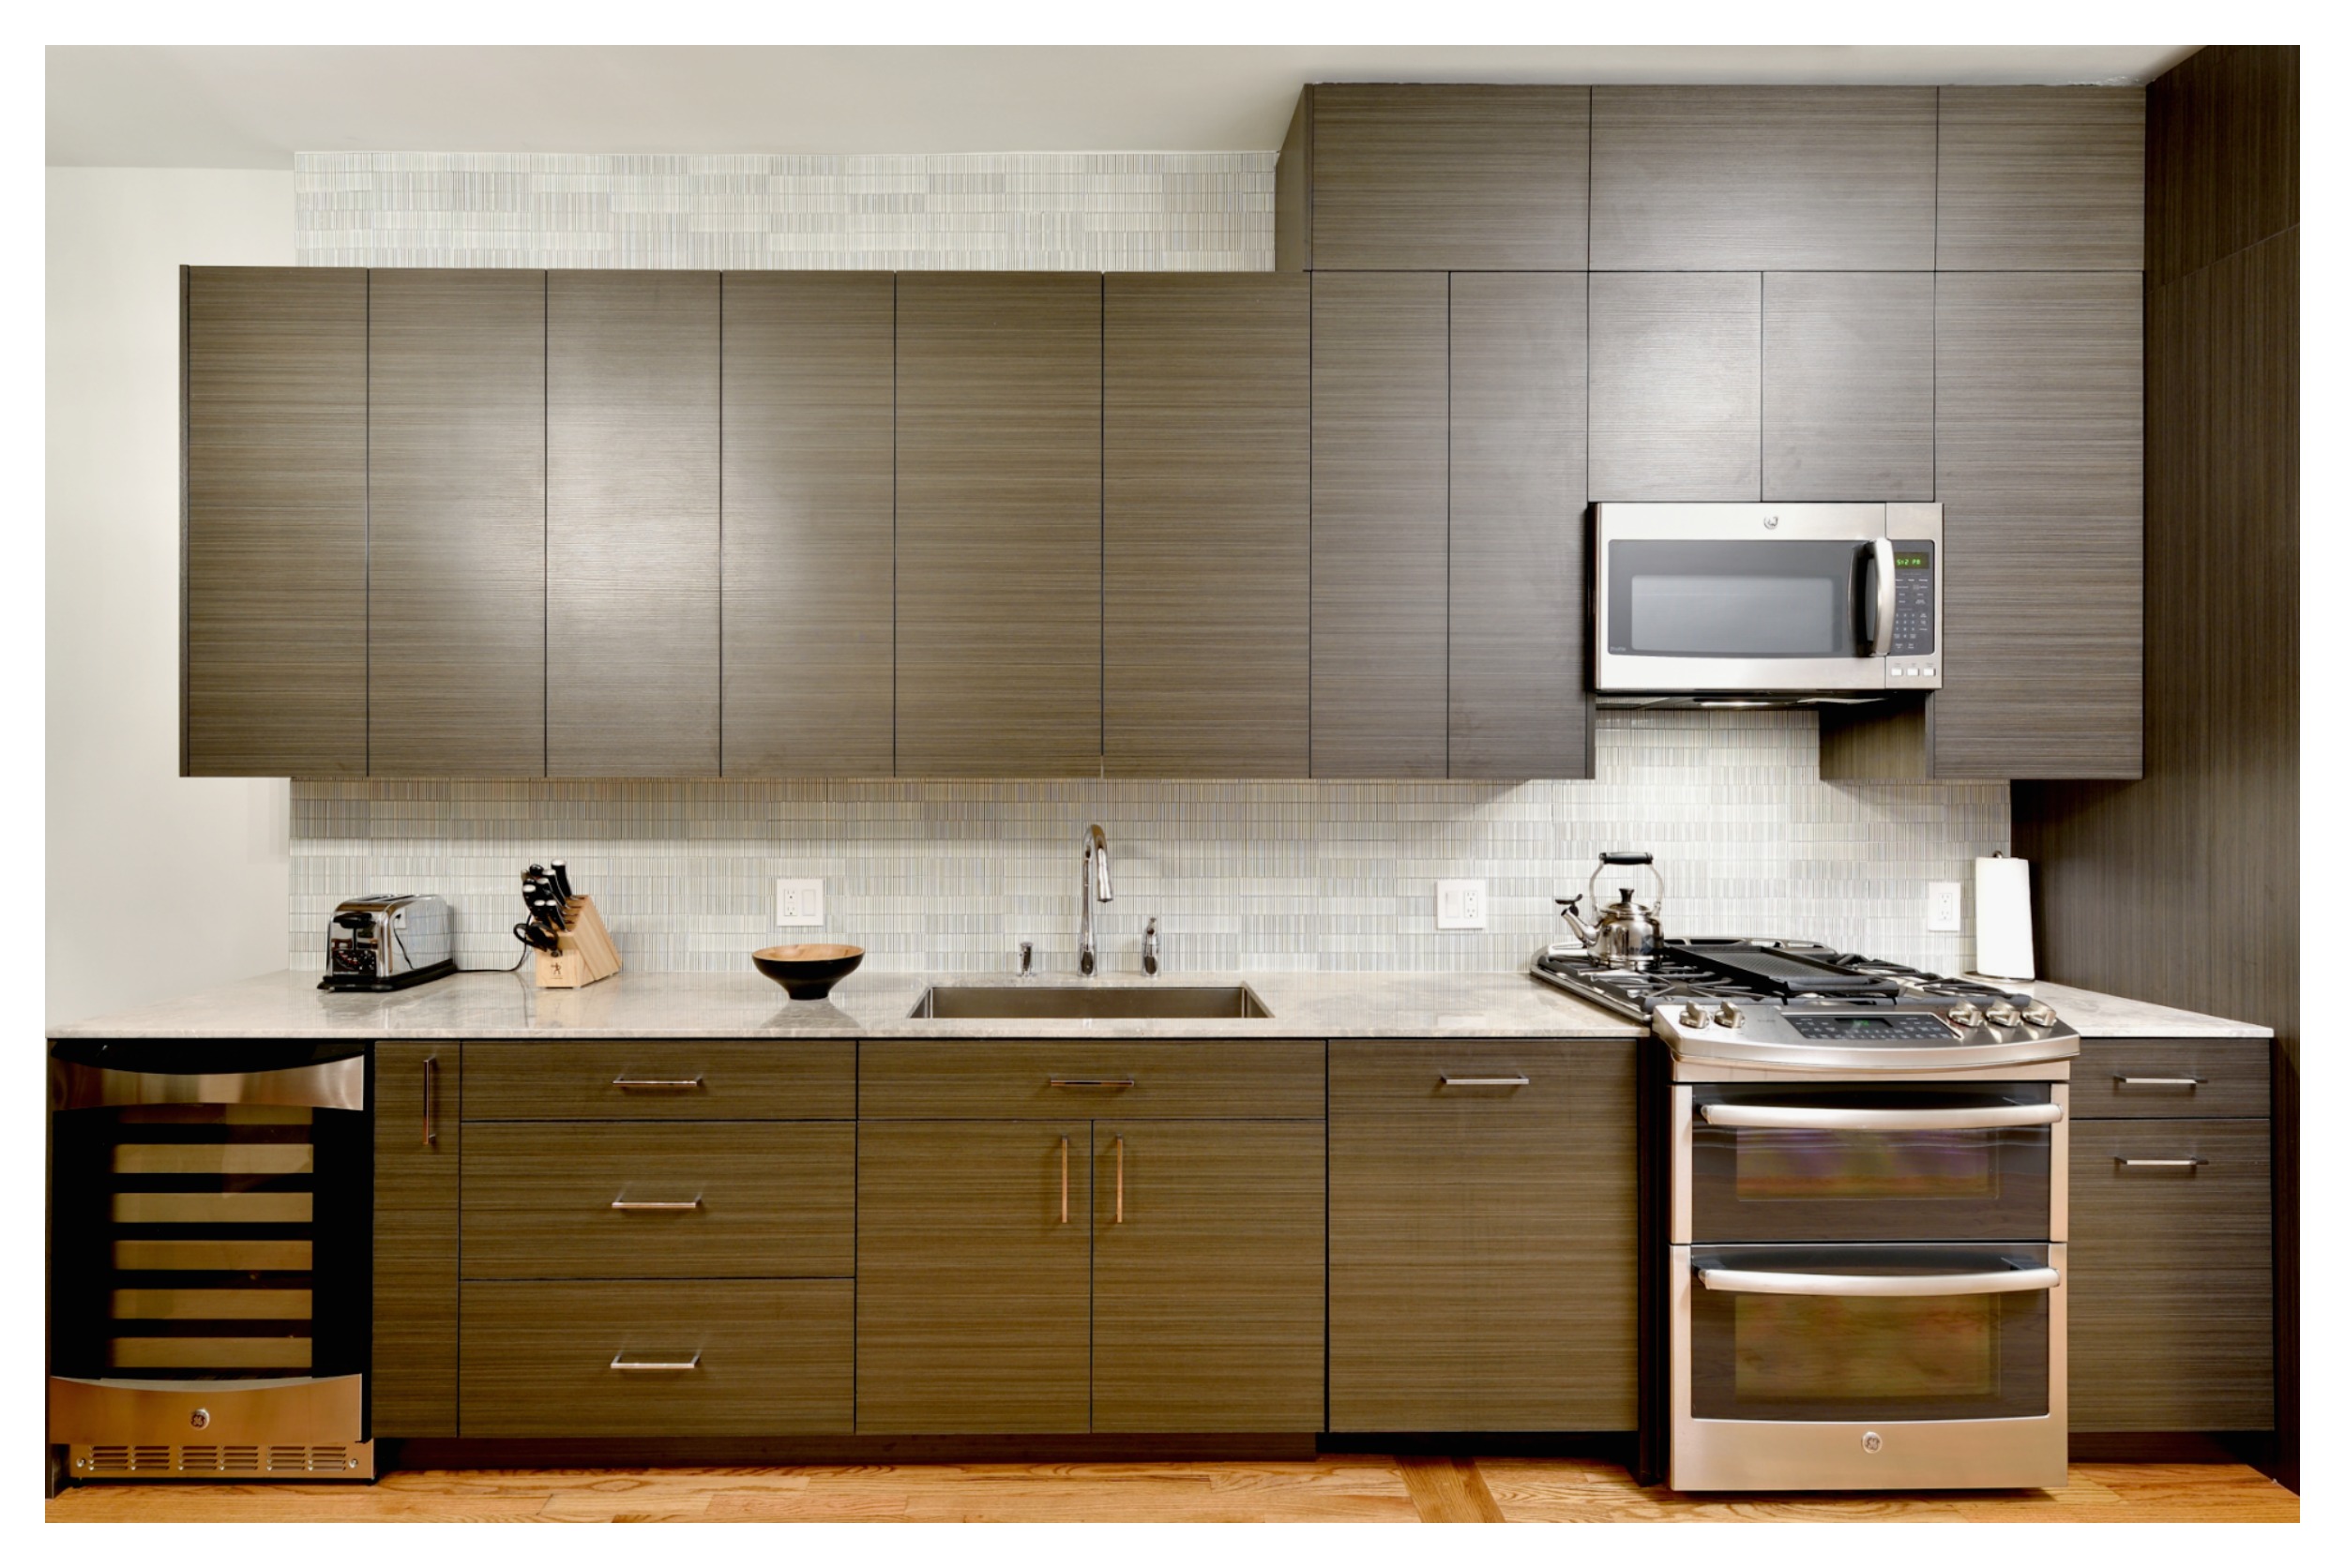 greenpoint-brooklyn-kitchen-2.jpg